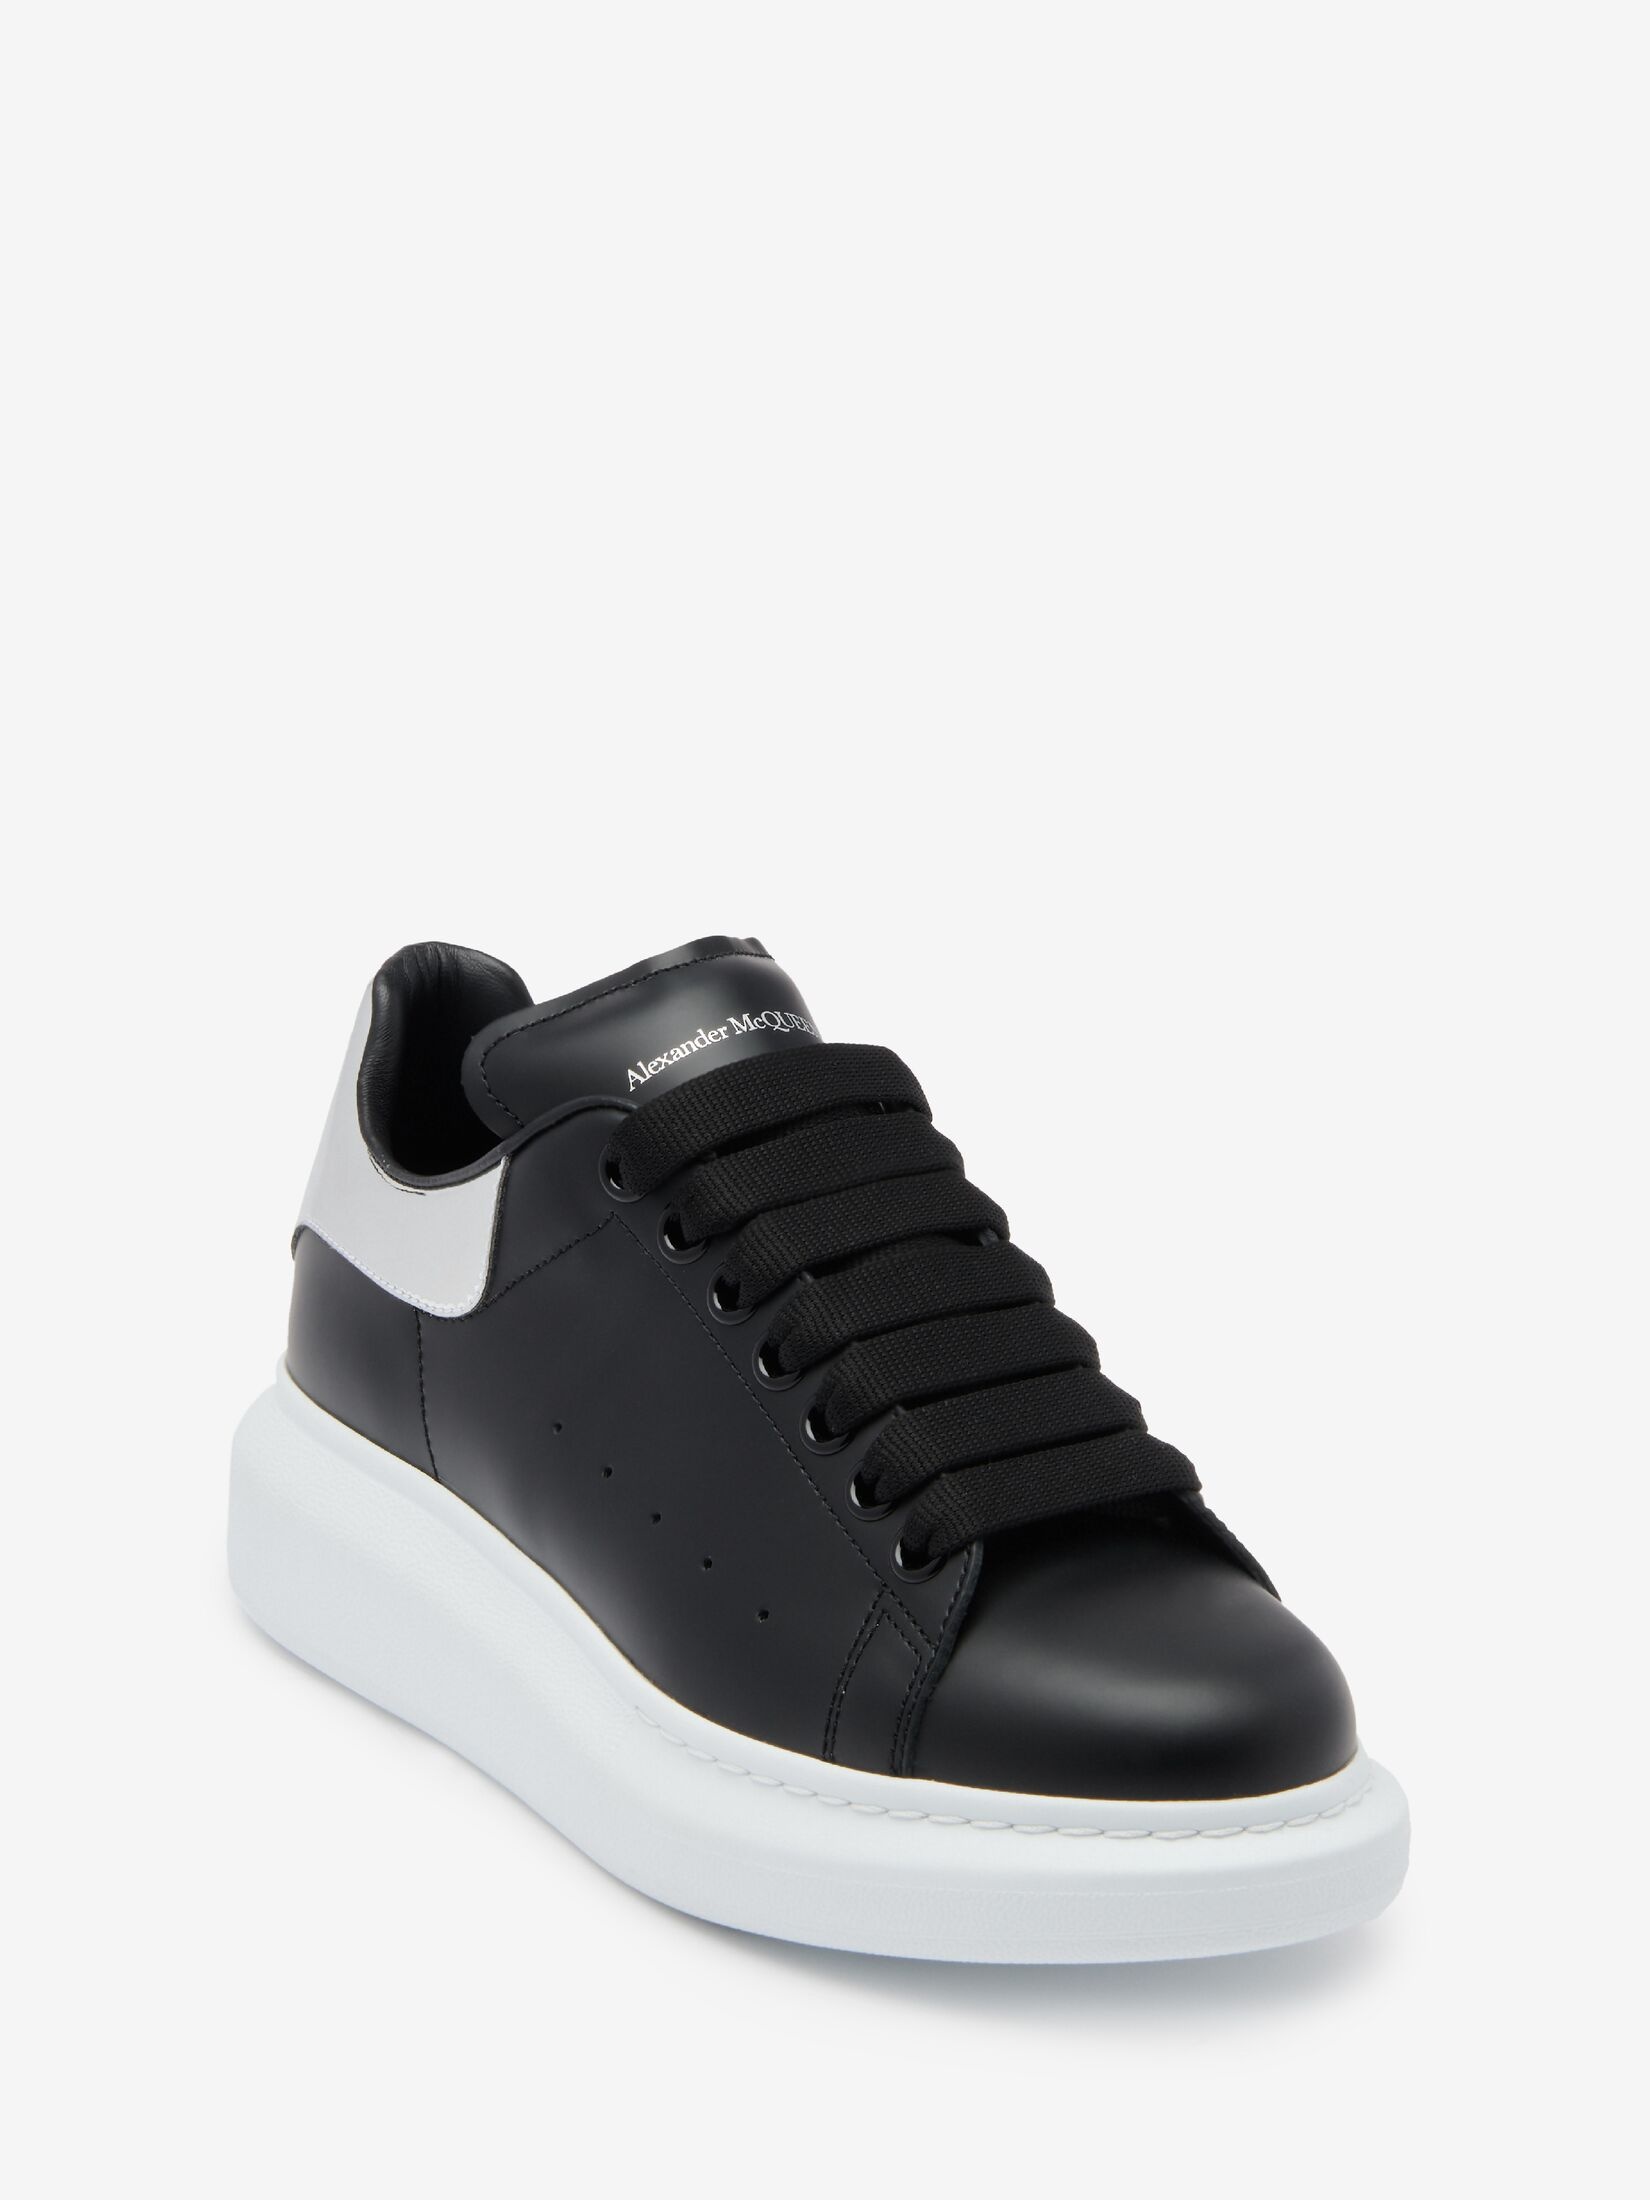 Women's Oversized Sneaker in Black/silver - 5